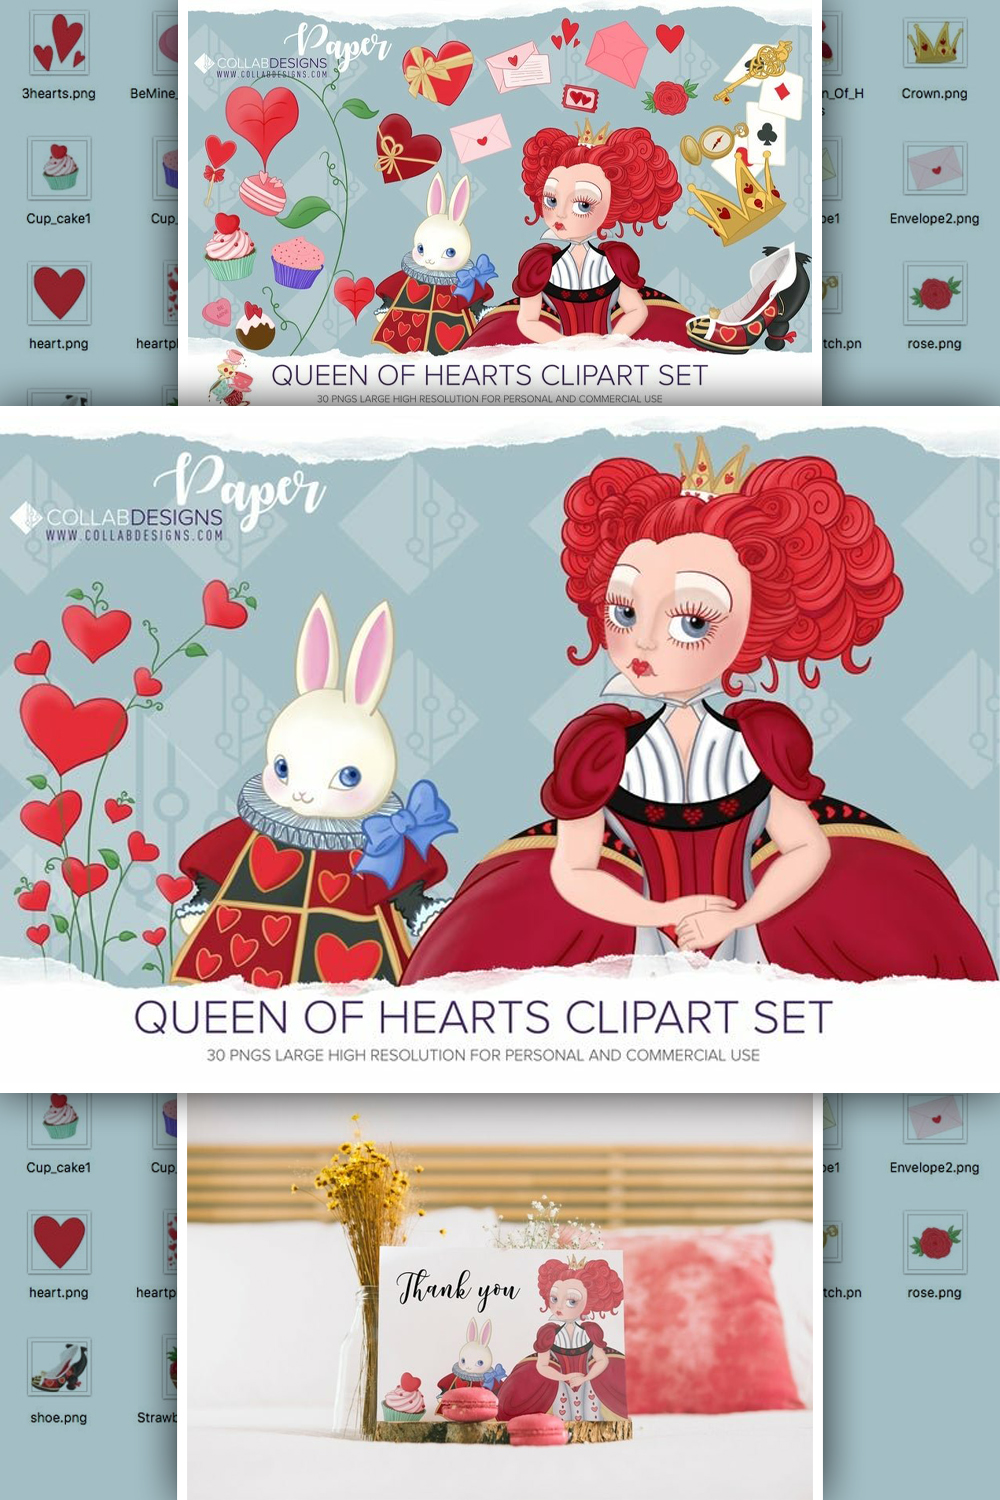 Queen of hearts alice in wonderland clip art of pinterest.